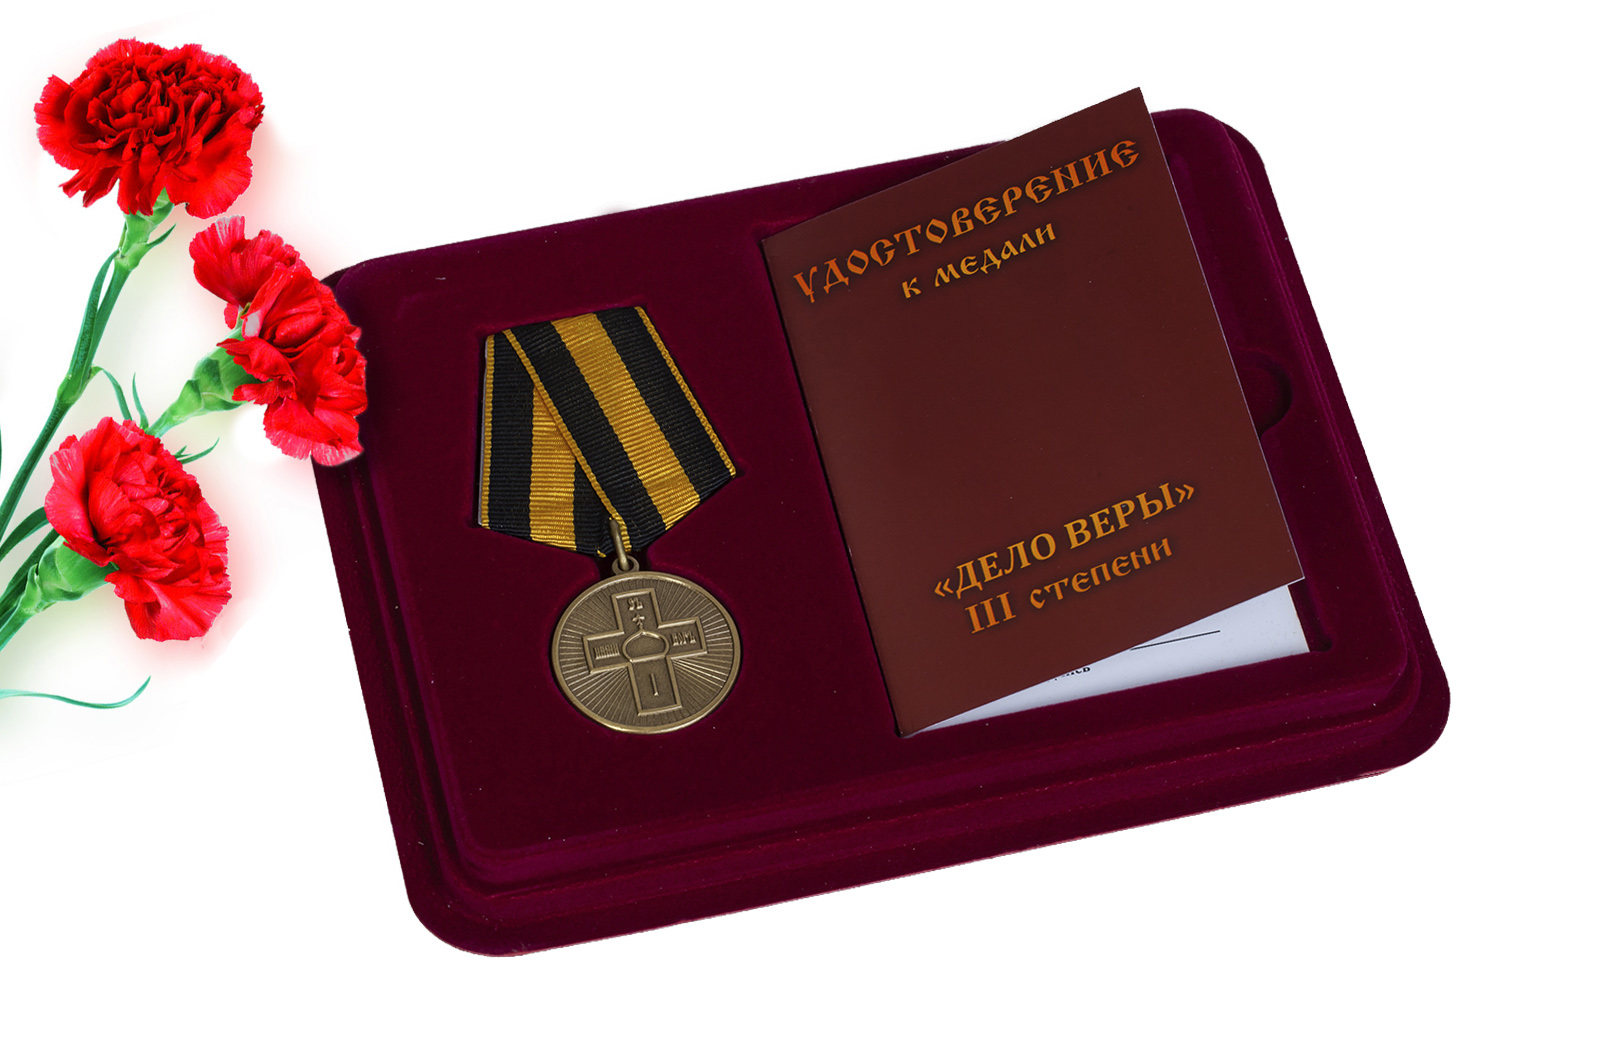 Купить православную медаль Дело Веры 3 степени онлайн с доставкой